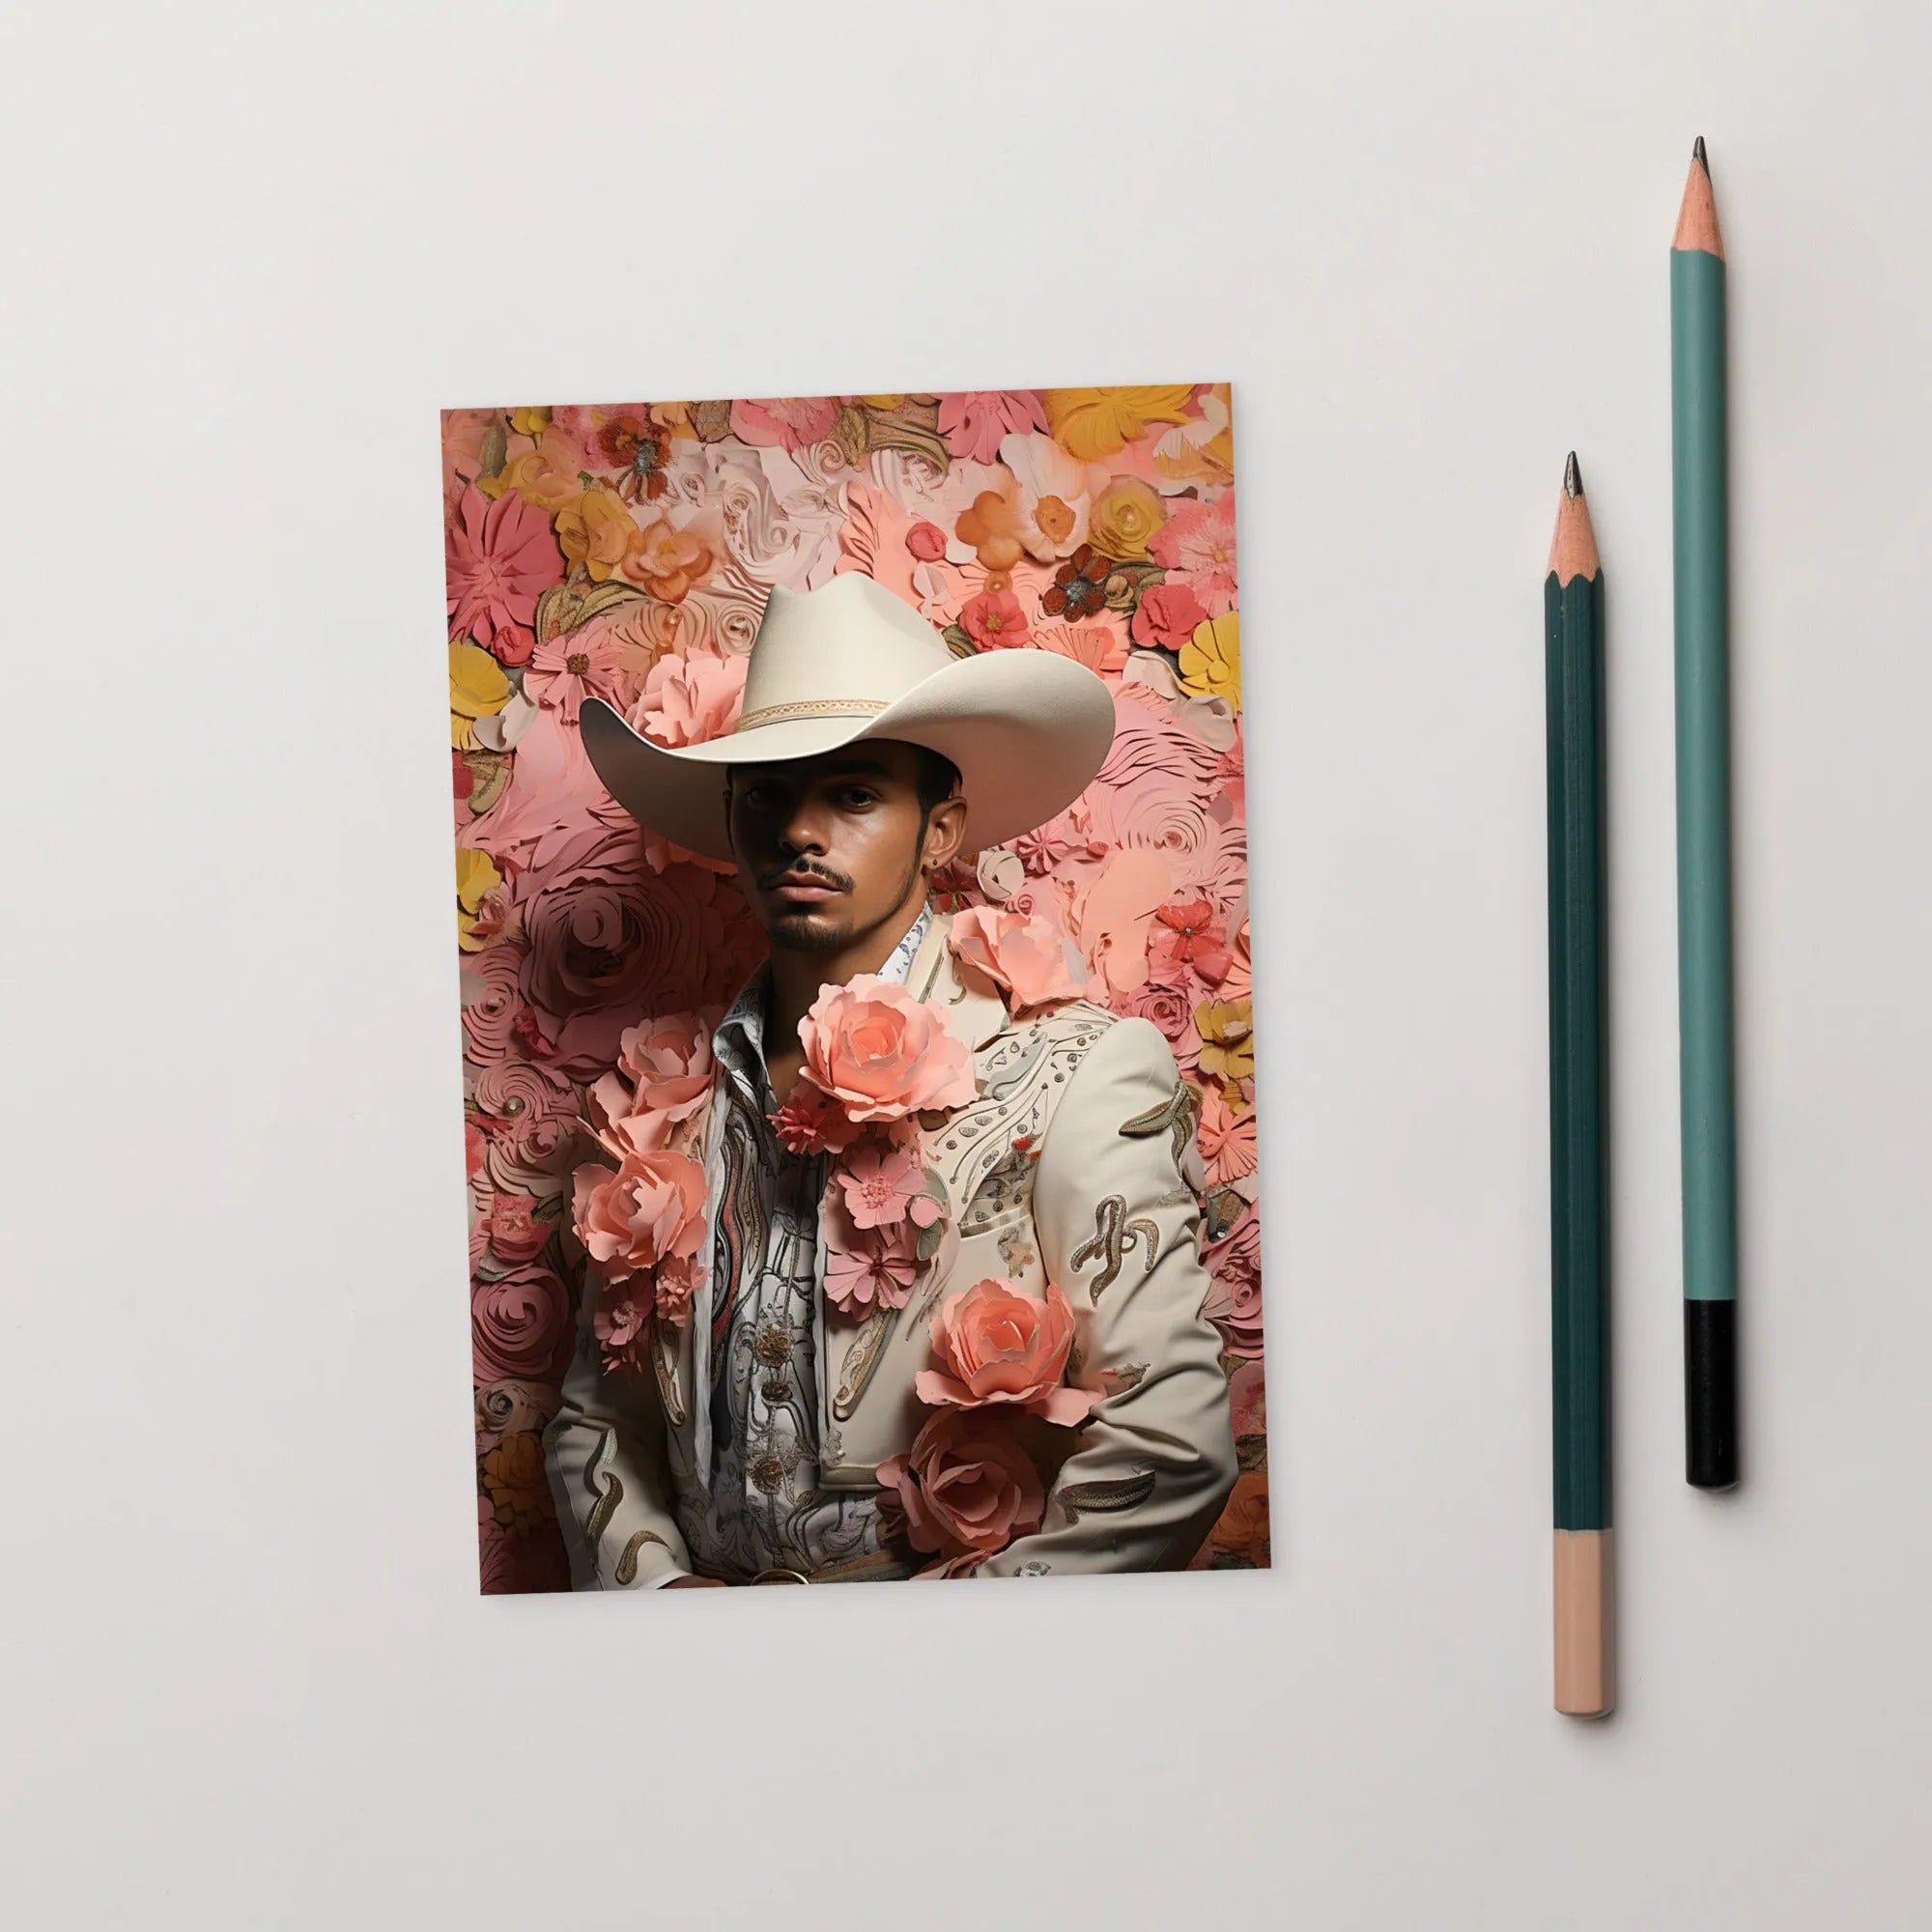 Fernando - Gay Mexican Cowboy Art Print - Vaquero Queerart - 4’x6’ - Posters Prints & Visual Artwork - Aesthetic Art